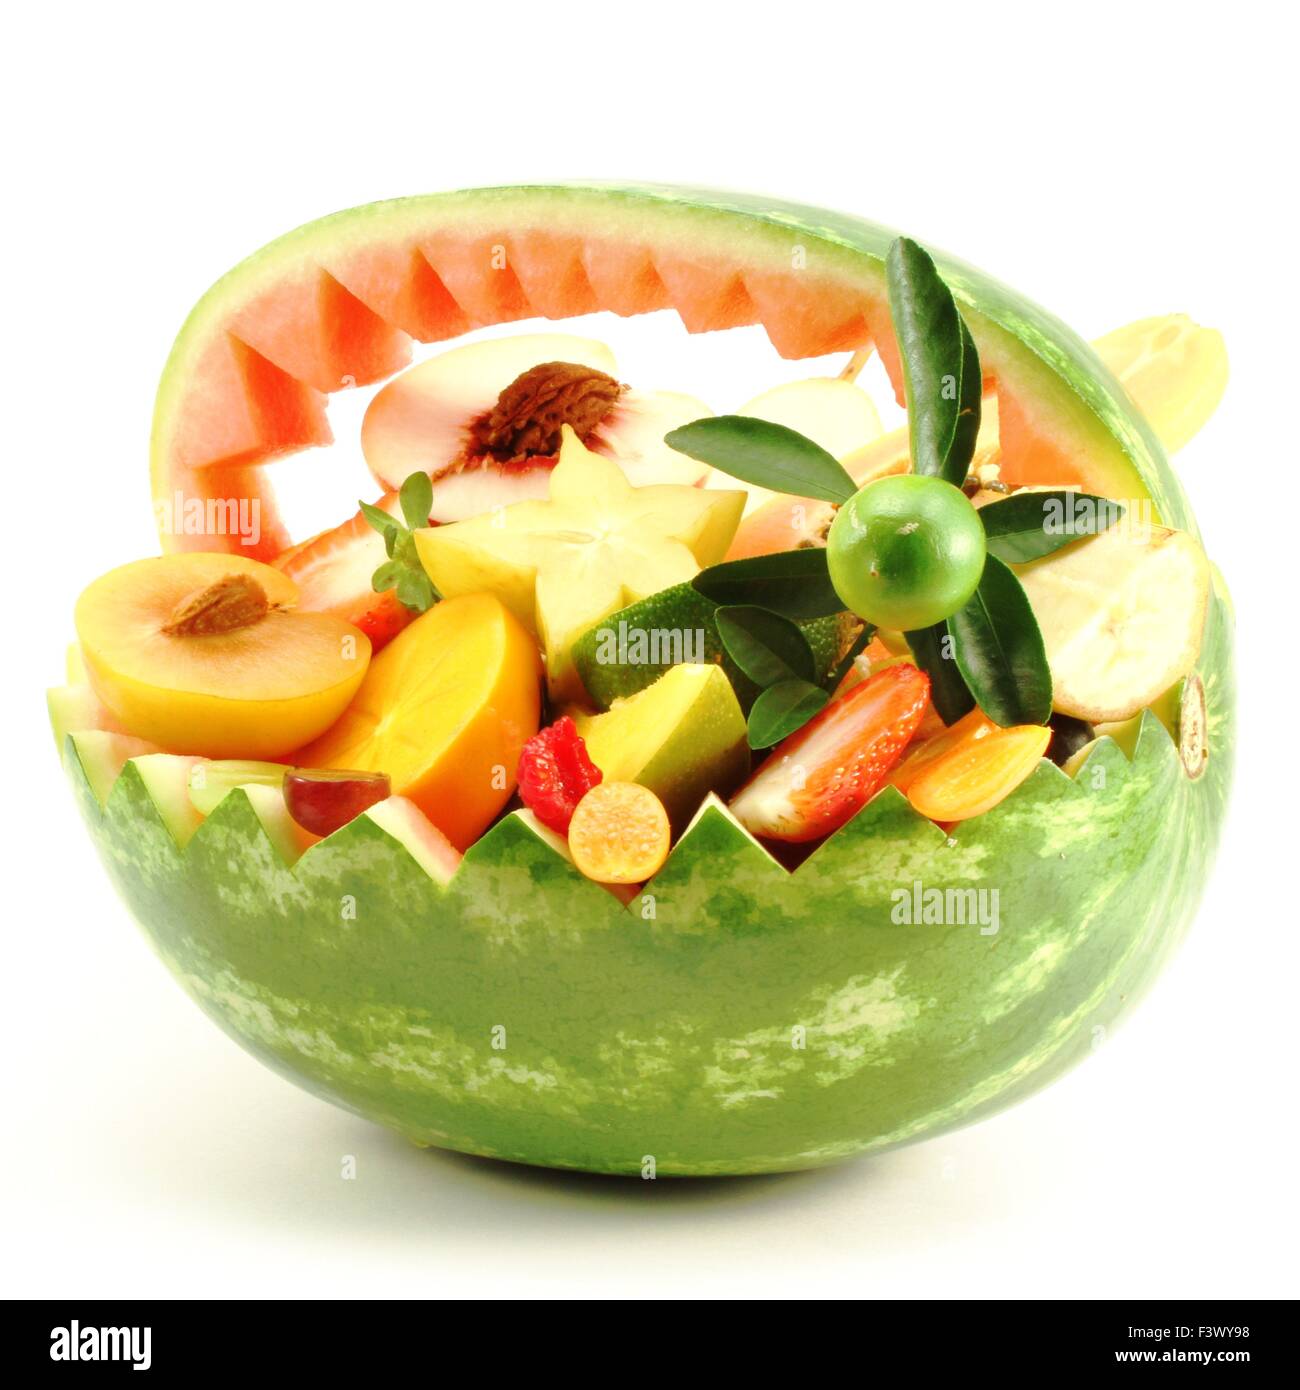 Fruit mixture as a fruit basket Stock Photo